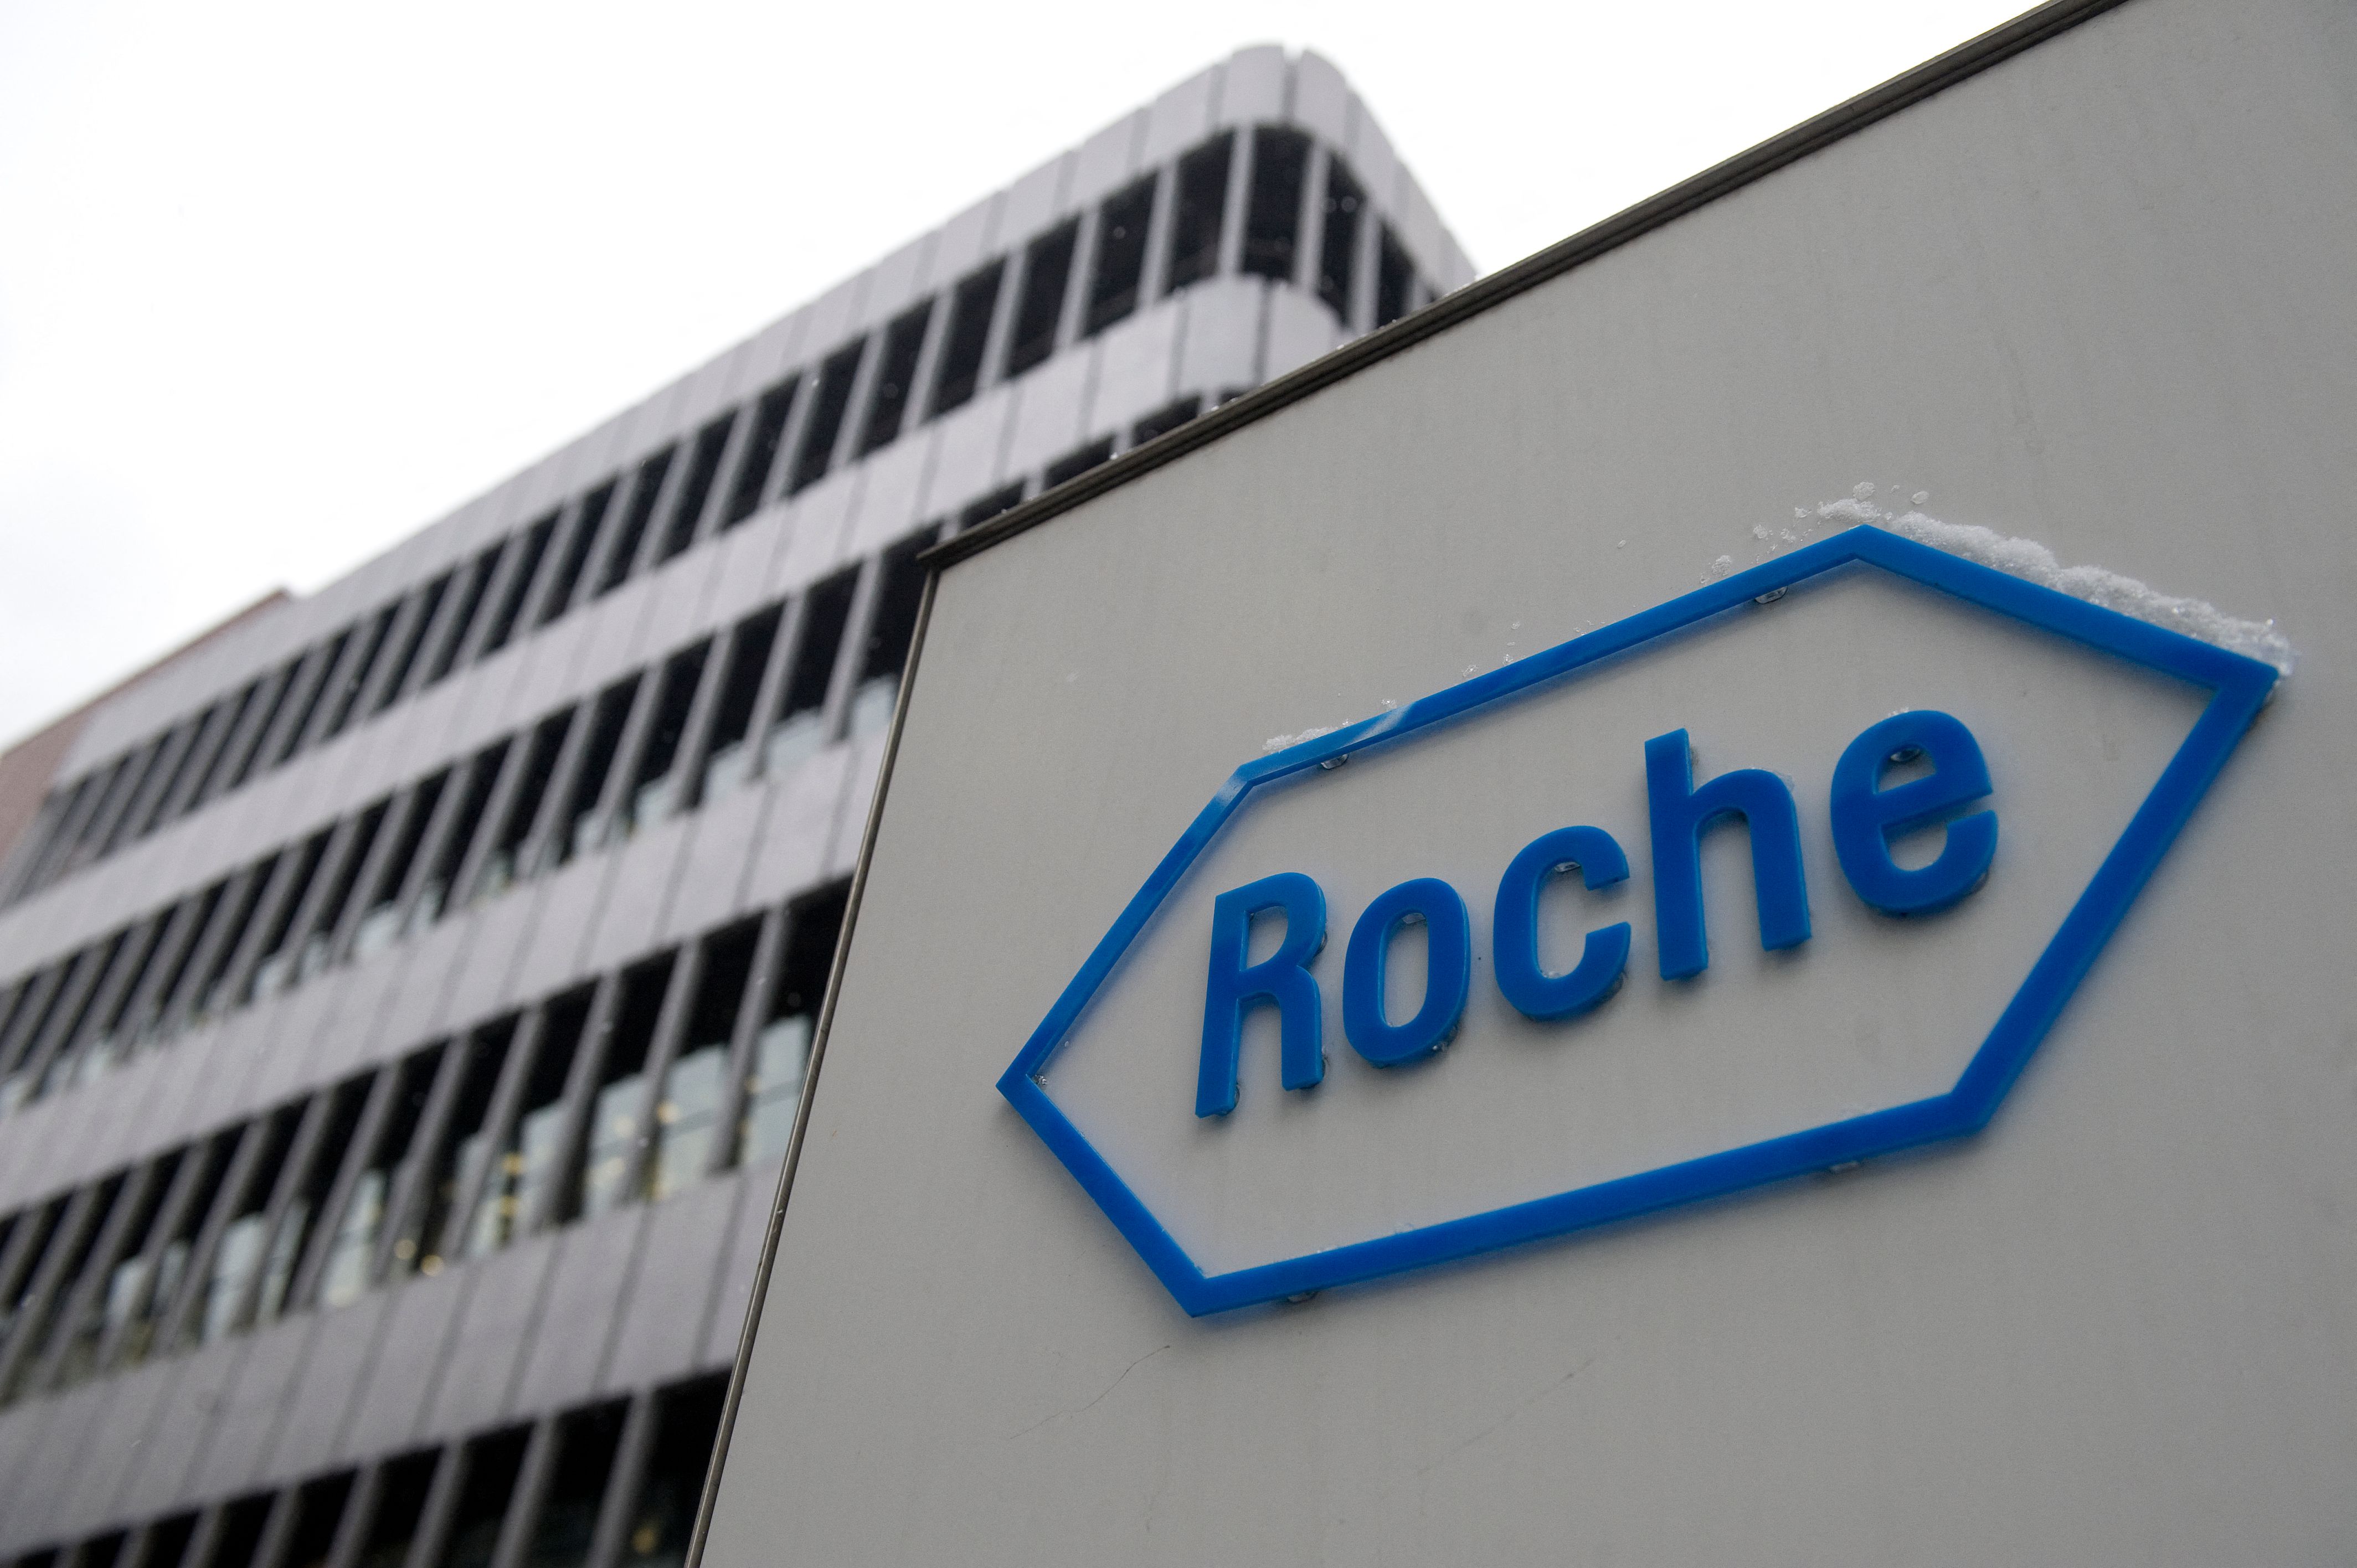 Le géant pharmaceutique suisse Roche (ici le logo) annonce des résultats prometteurs pour un traitement